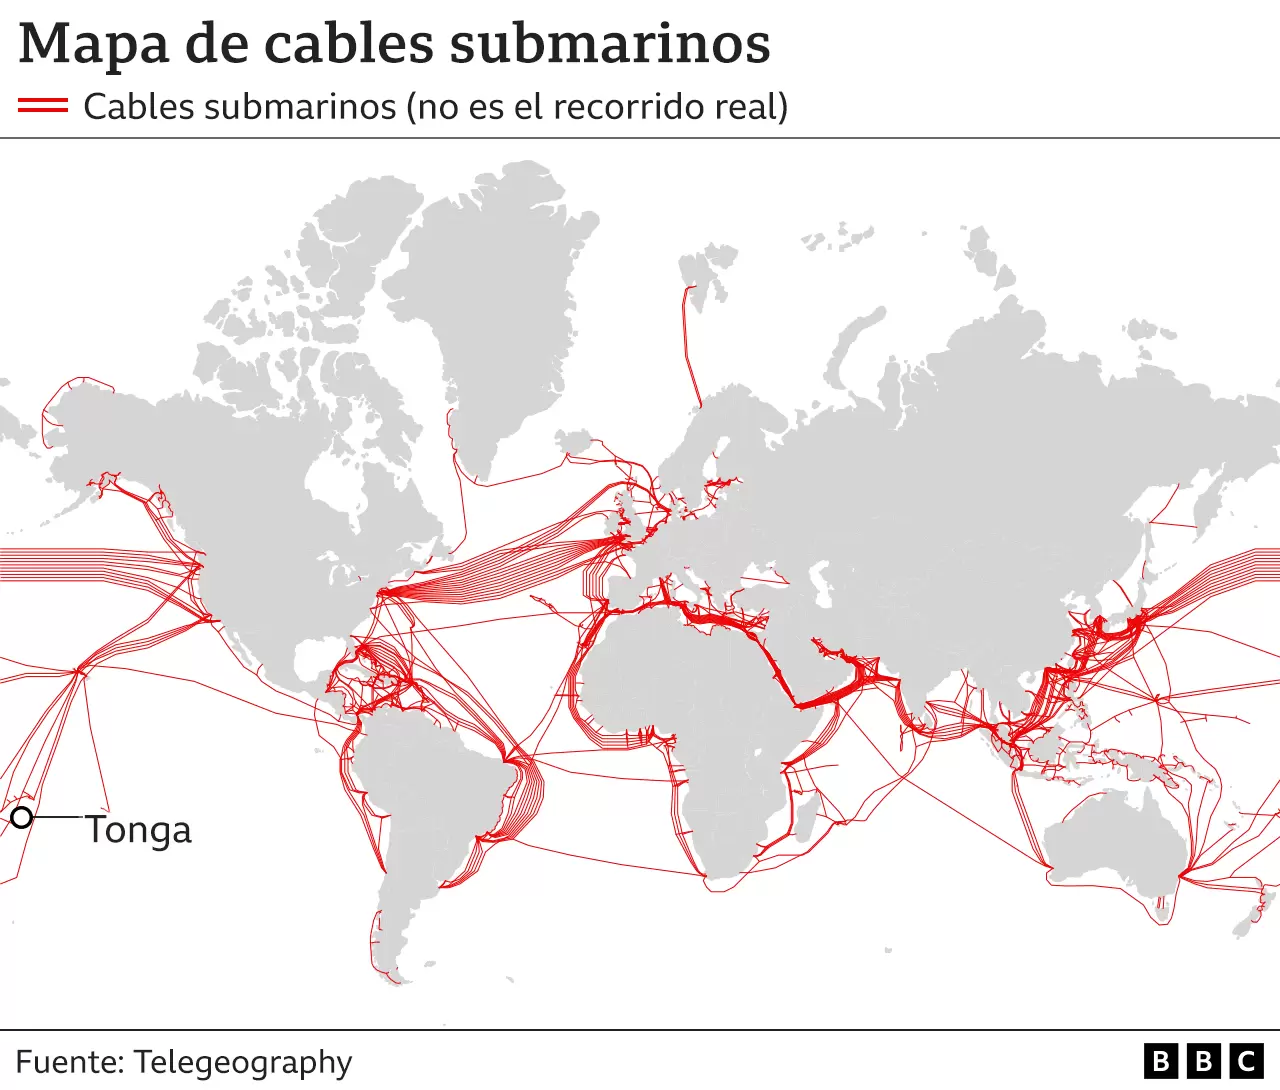 Cables submarinos en Miami van hasta Centroamérica y Sudamérica